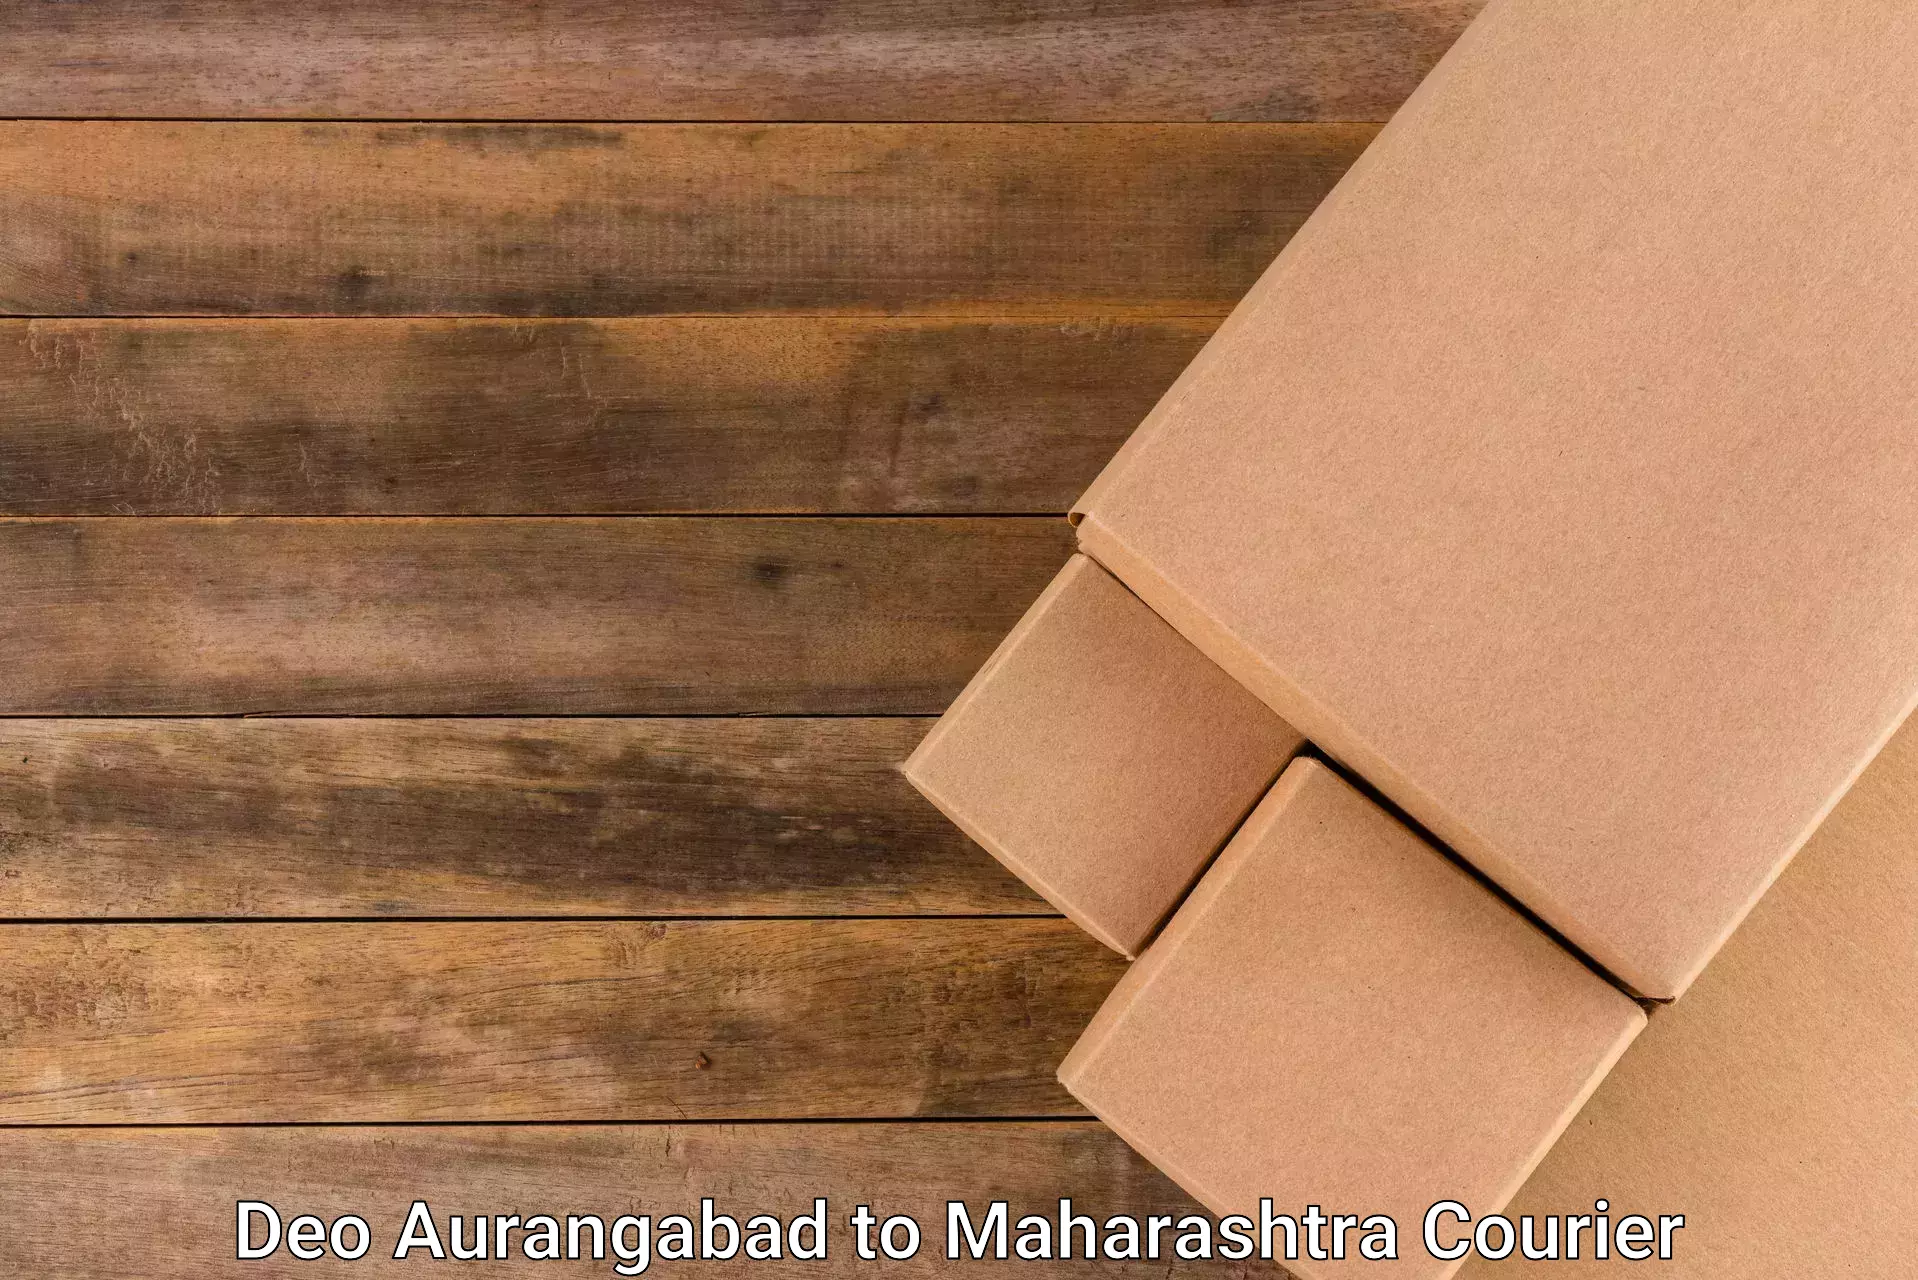 Online package tracking Deo Aurangabad to Mumbai University